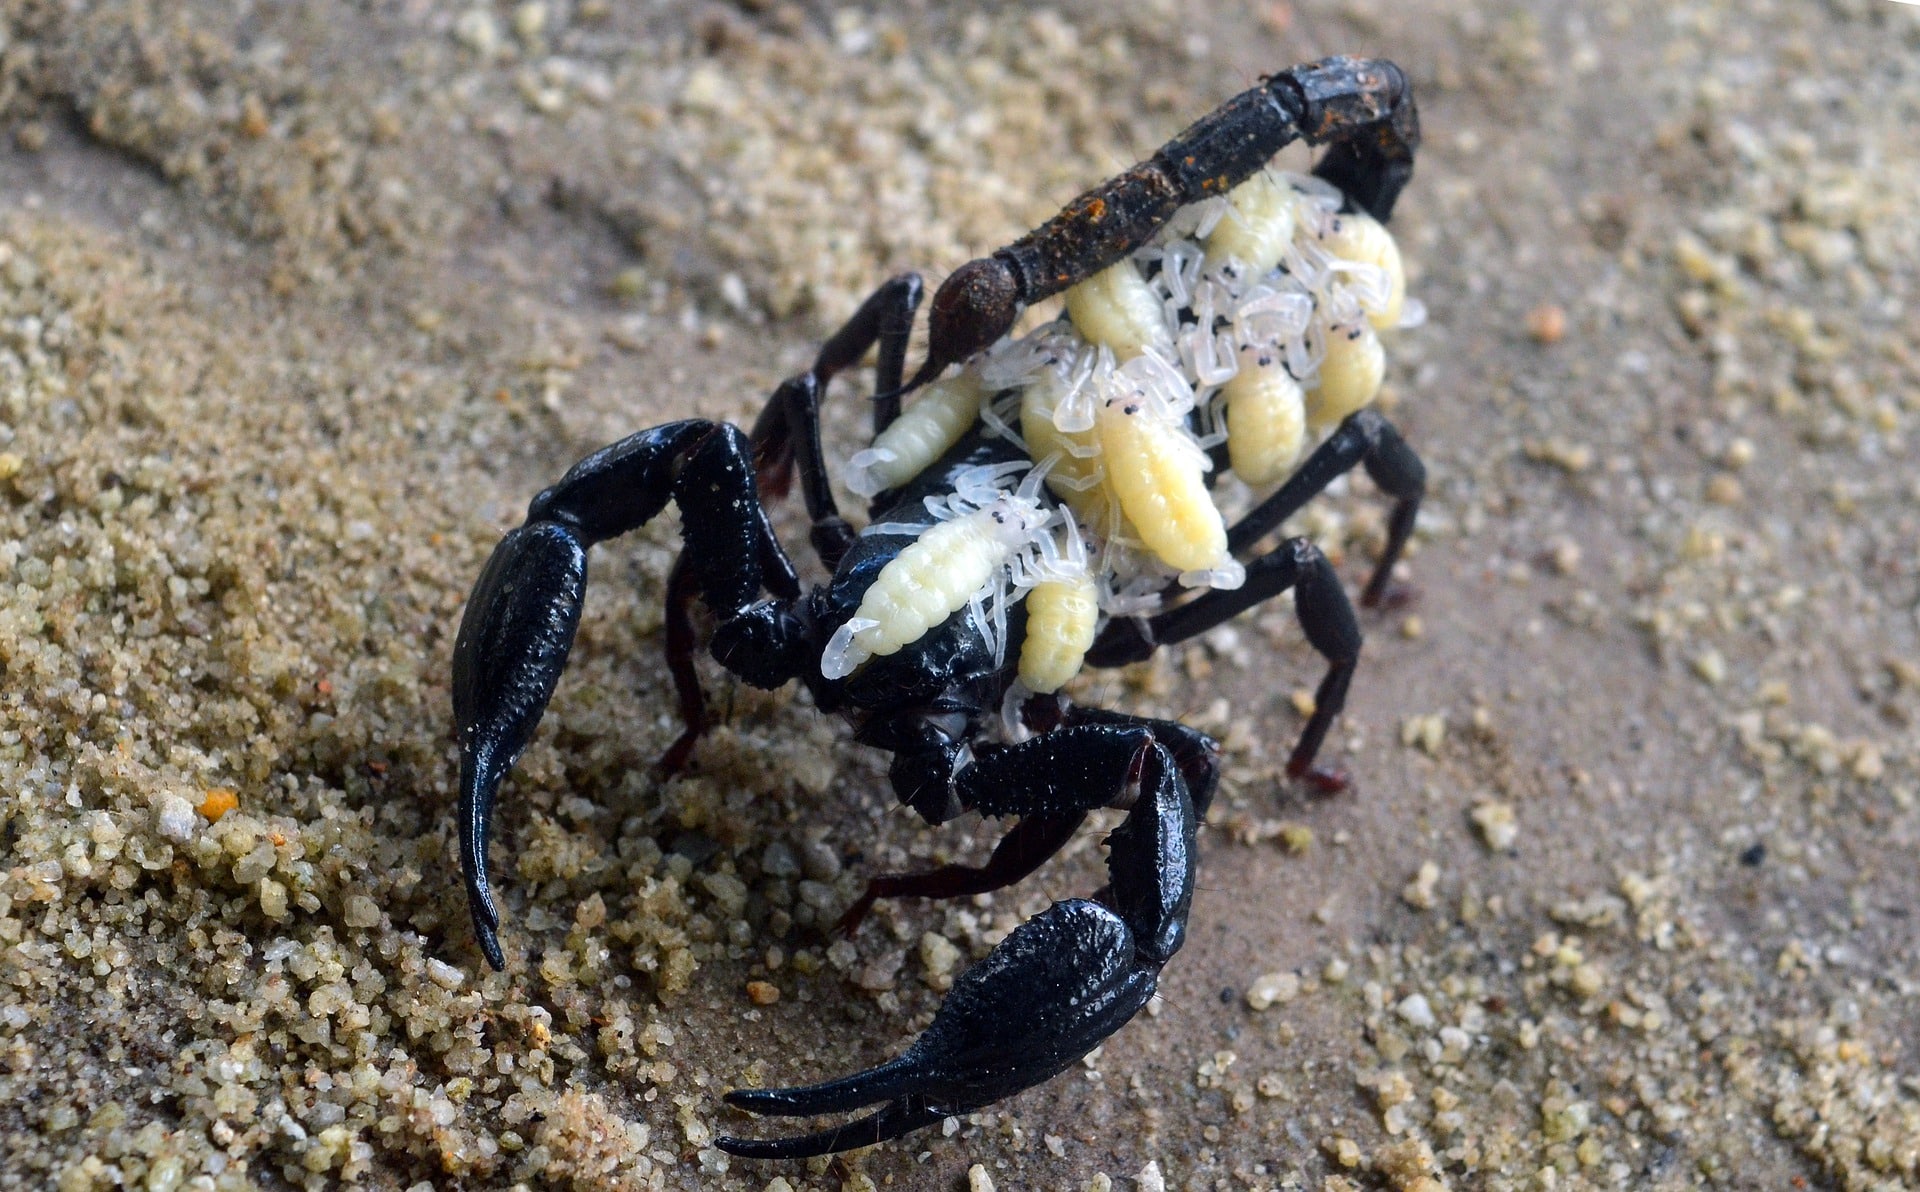 Les scorpions au Mexique : réel danger ?